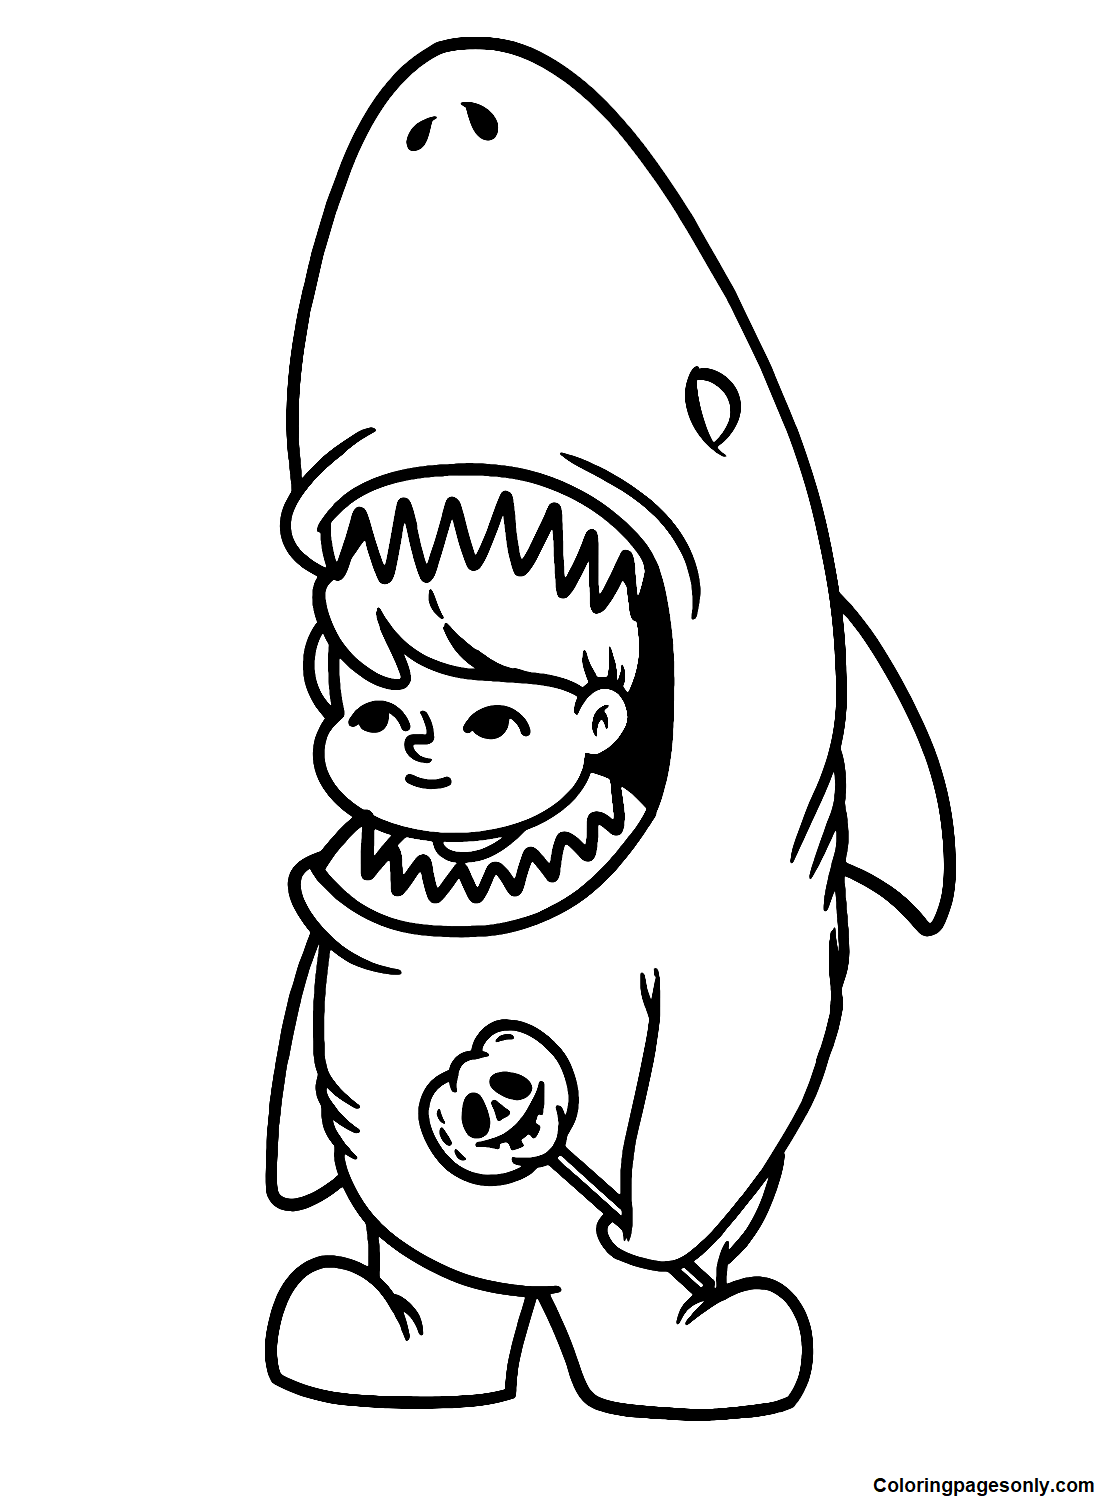 Милый мальчик в костюме акулы из "Boyish"